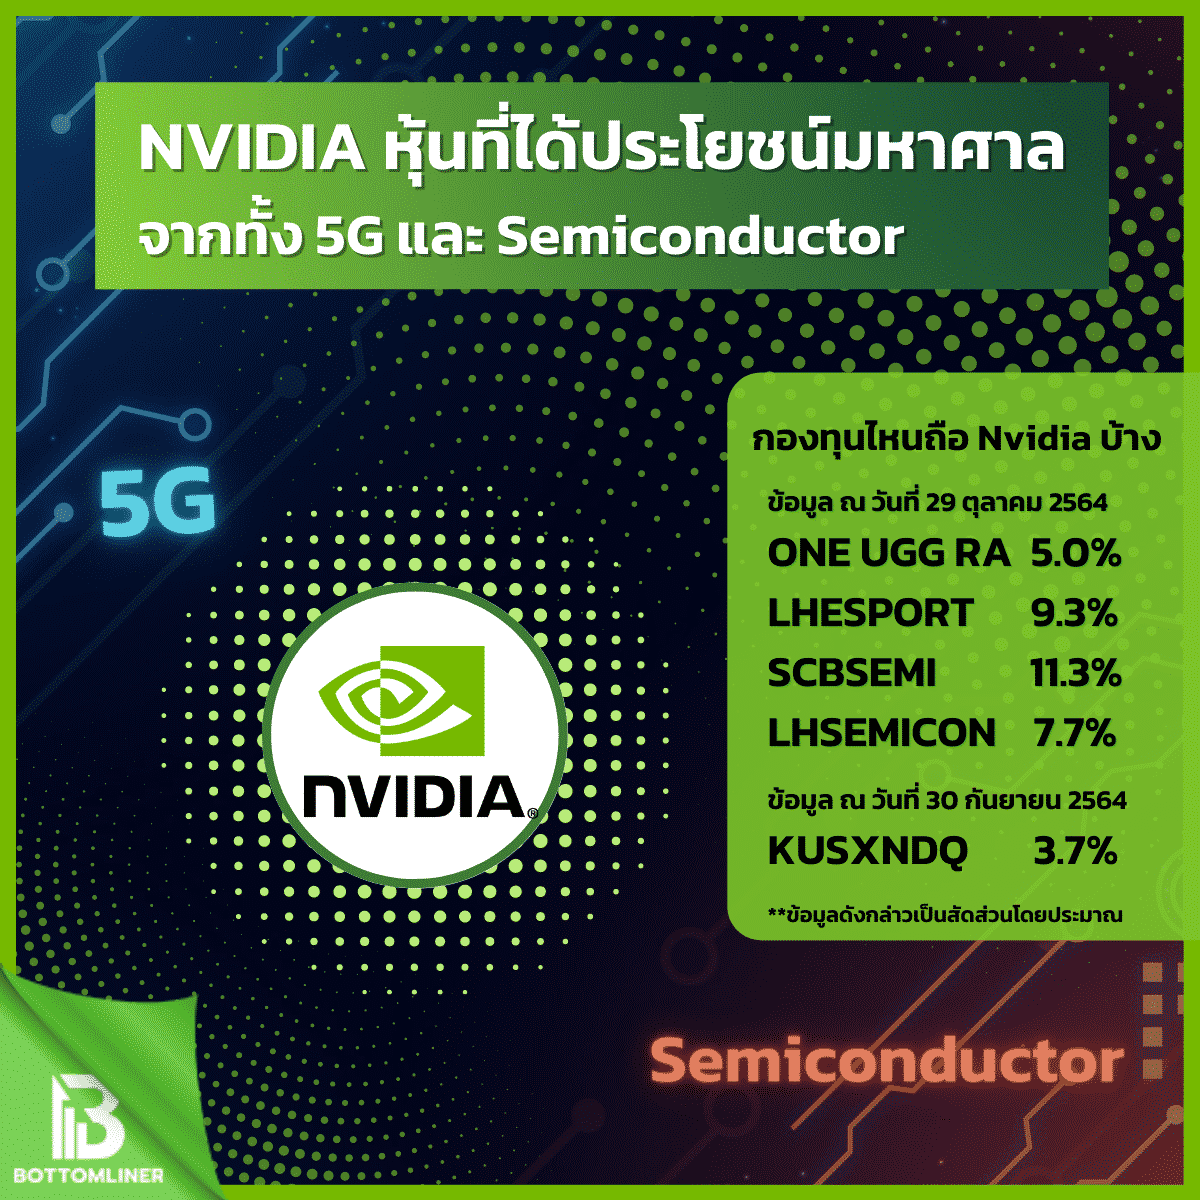 Nvidia หุ้นที่ได้ประโยชน์มหาศาล จากทั้ง 5G และ Semiconductor